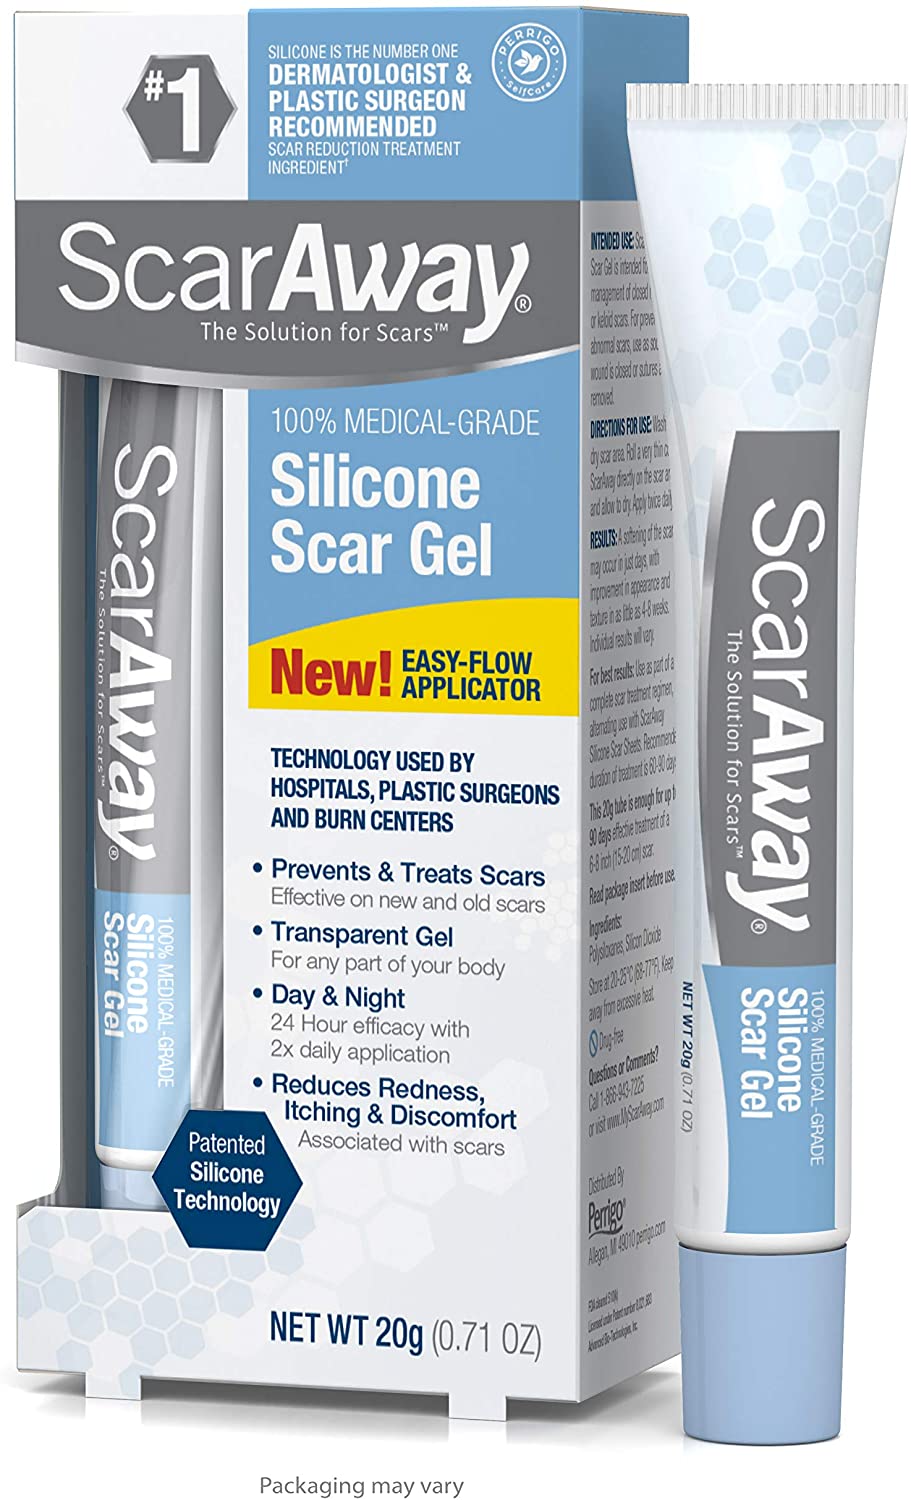 ScarAway 100% Medical-Grade Silicone Scar Gel-0.71oz (20g)